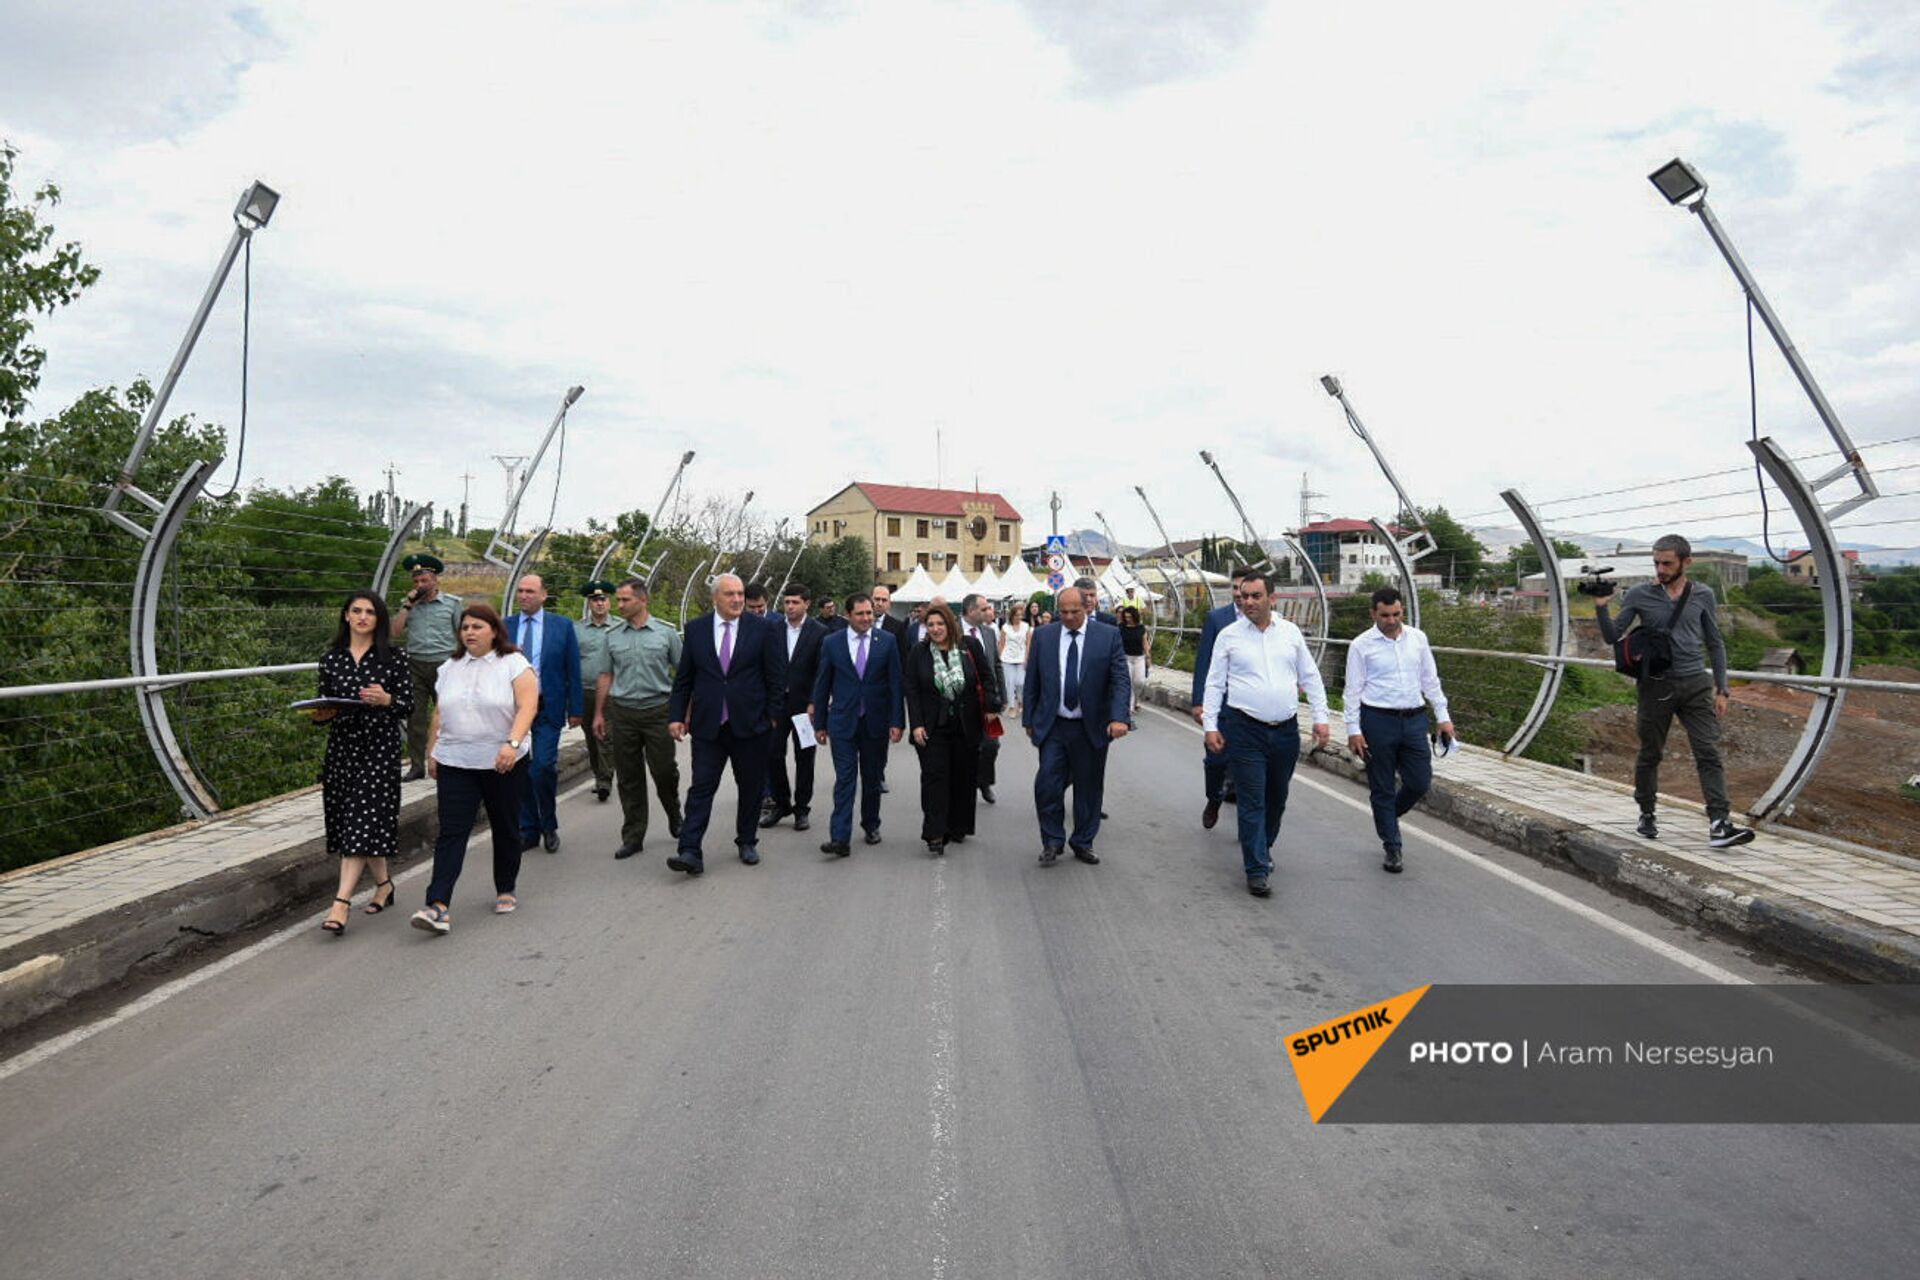 Новый пограничный мост между Арменией и Грузией станет шире - видео - Sputnik Армения, 1920, 09.07.2021